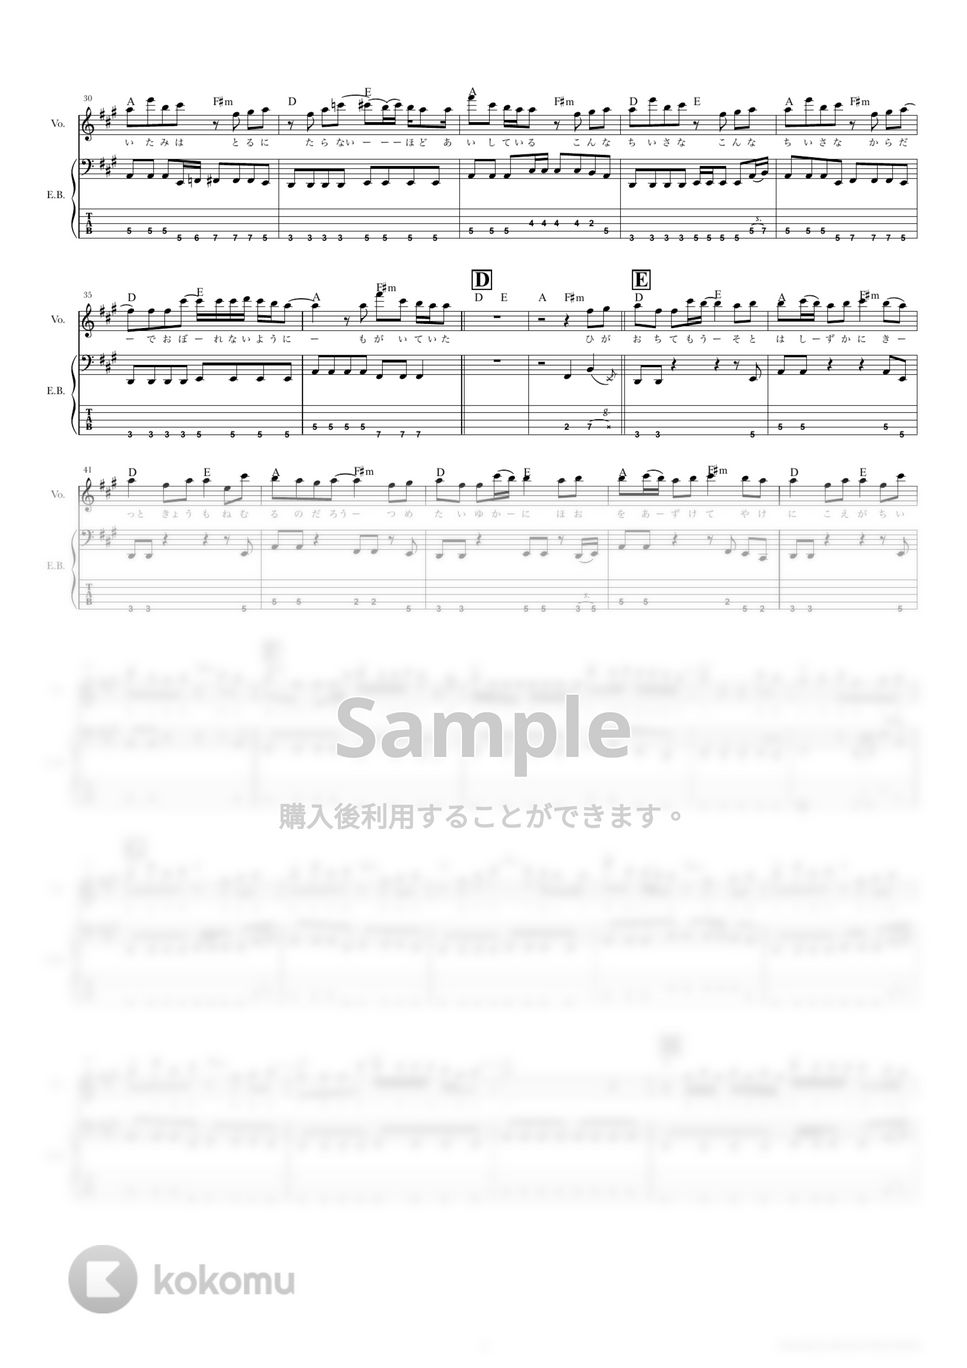 バルーン - 朝を呑む (ベーススコア・歌詞・コード付き) by TRIAD GUITAR SCHOOL